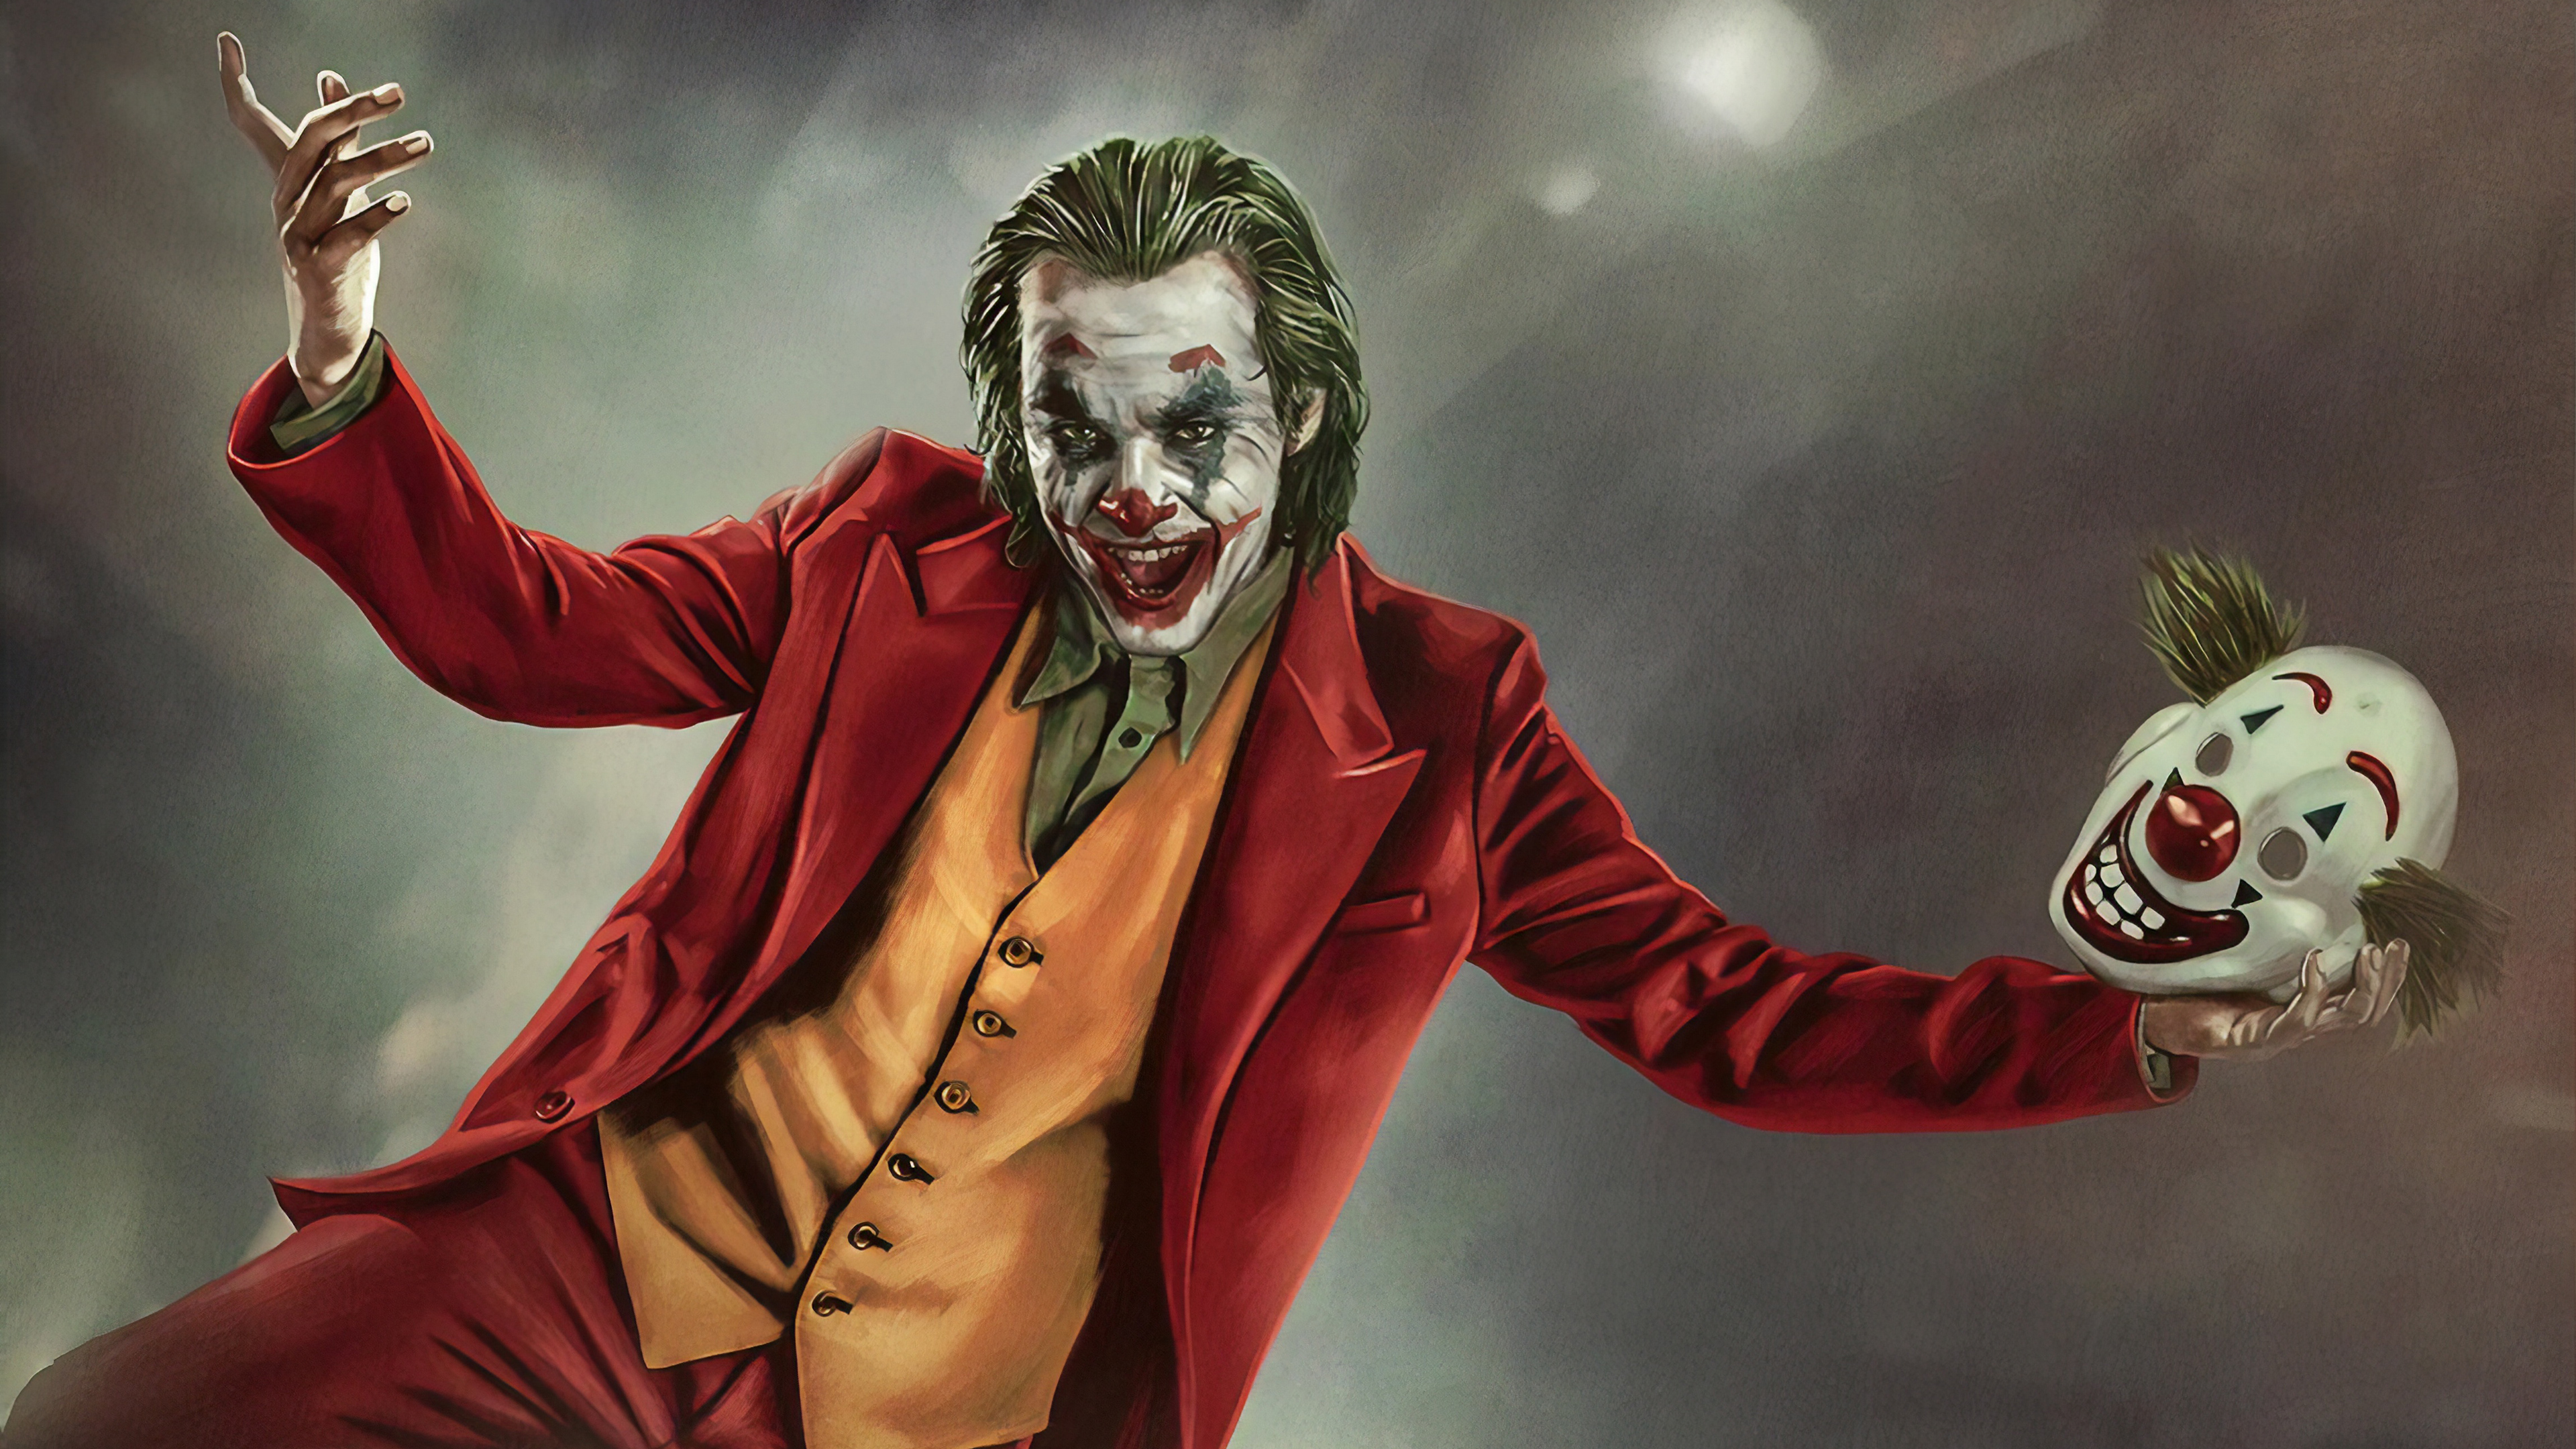 Tải Ngay Bộ Hình Nền Joker - Nhân Vật Phản Diện Được Yêu Thích